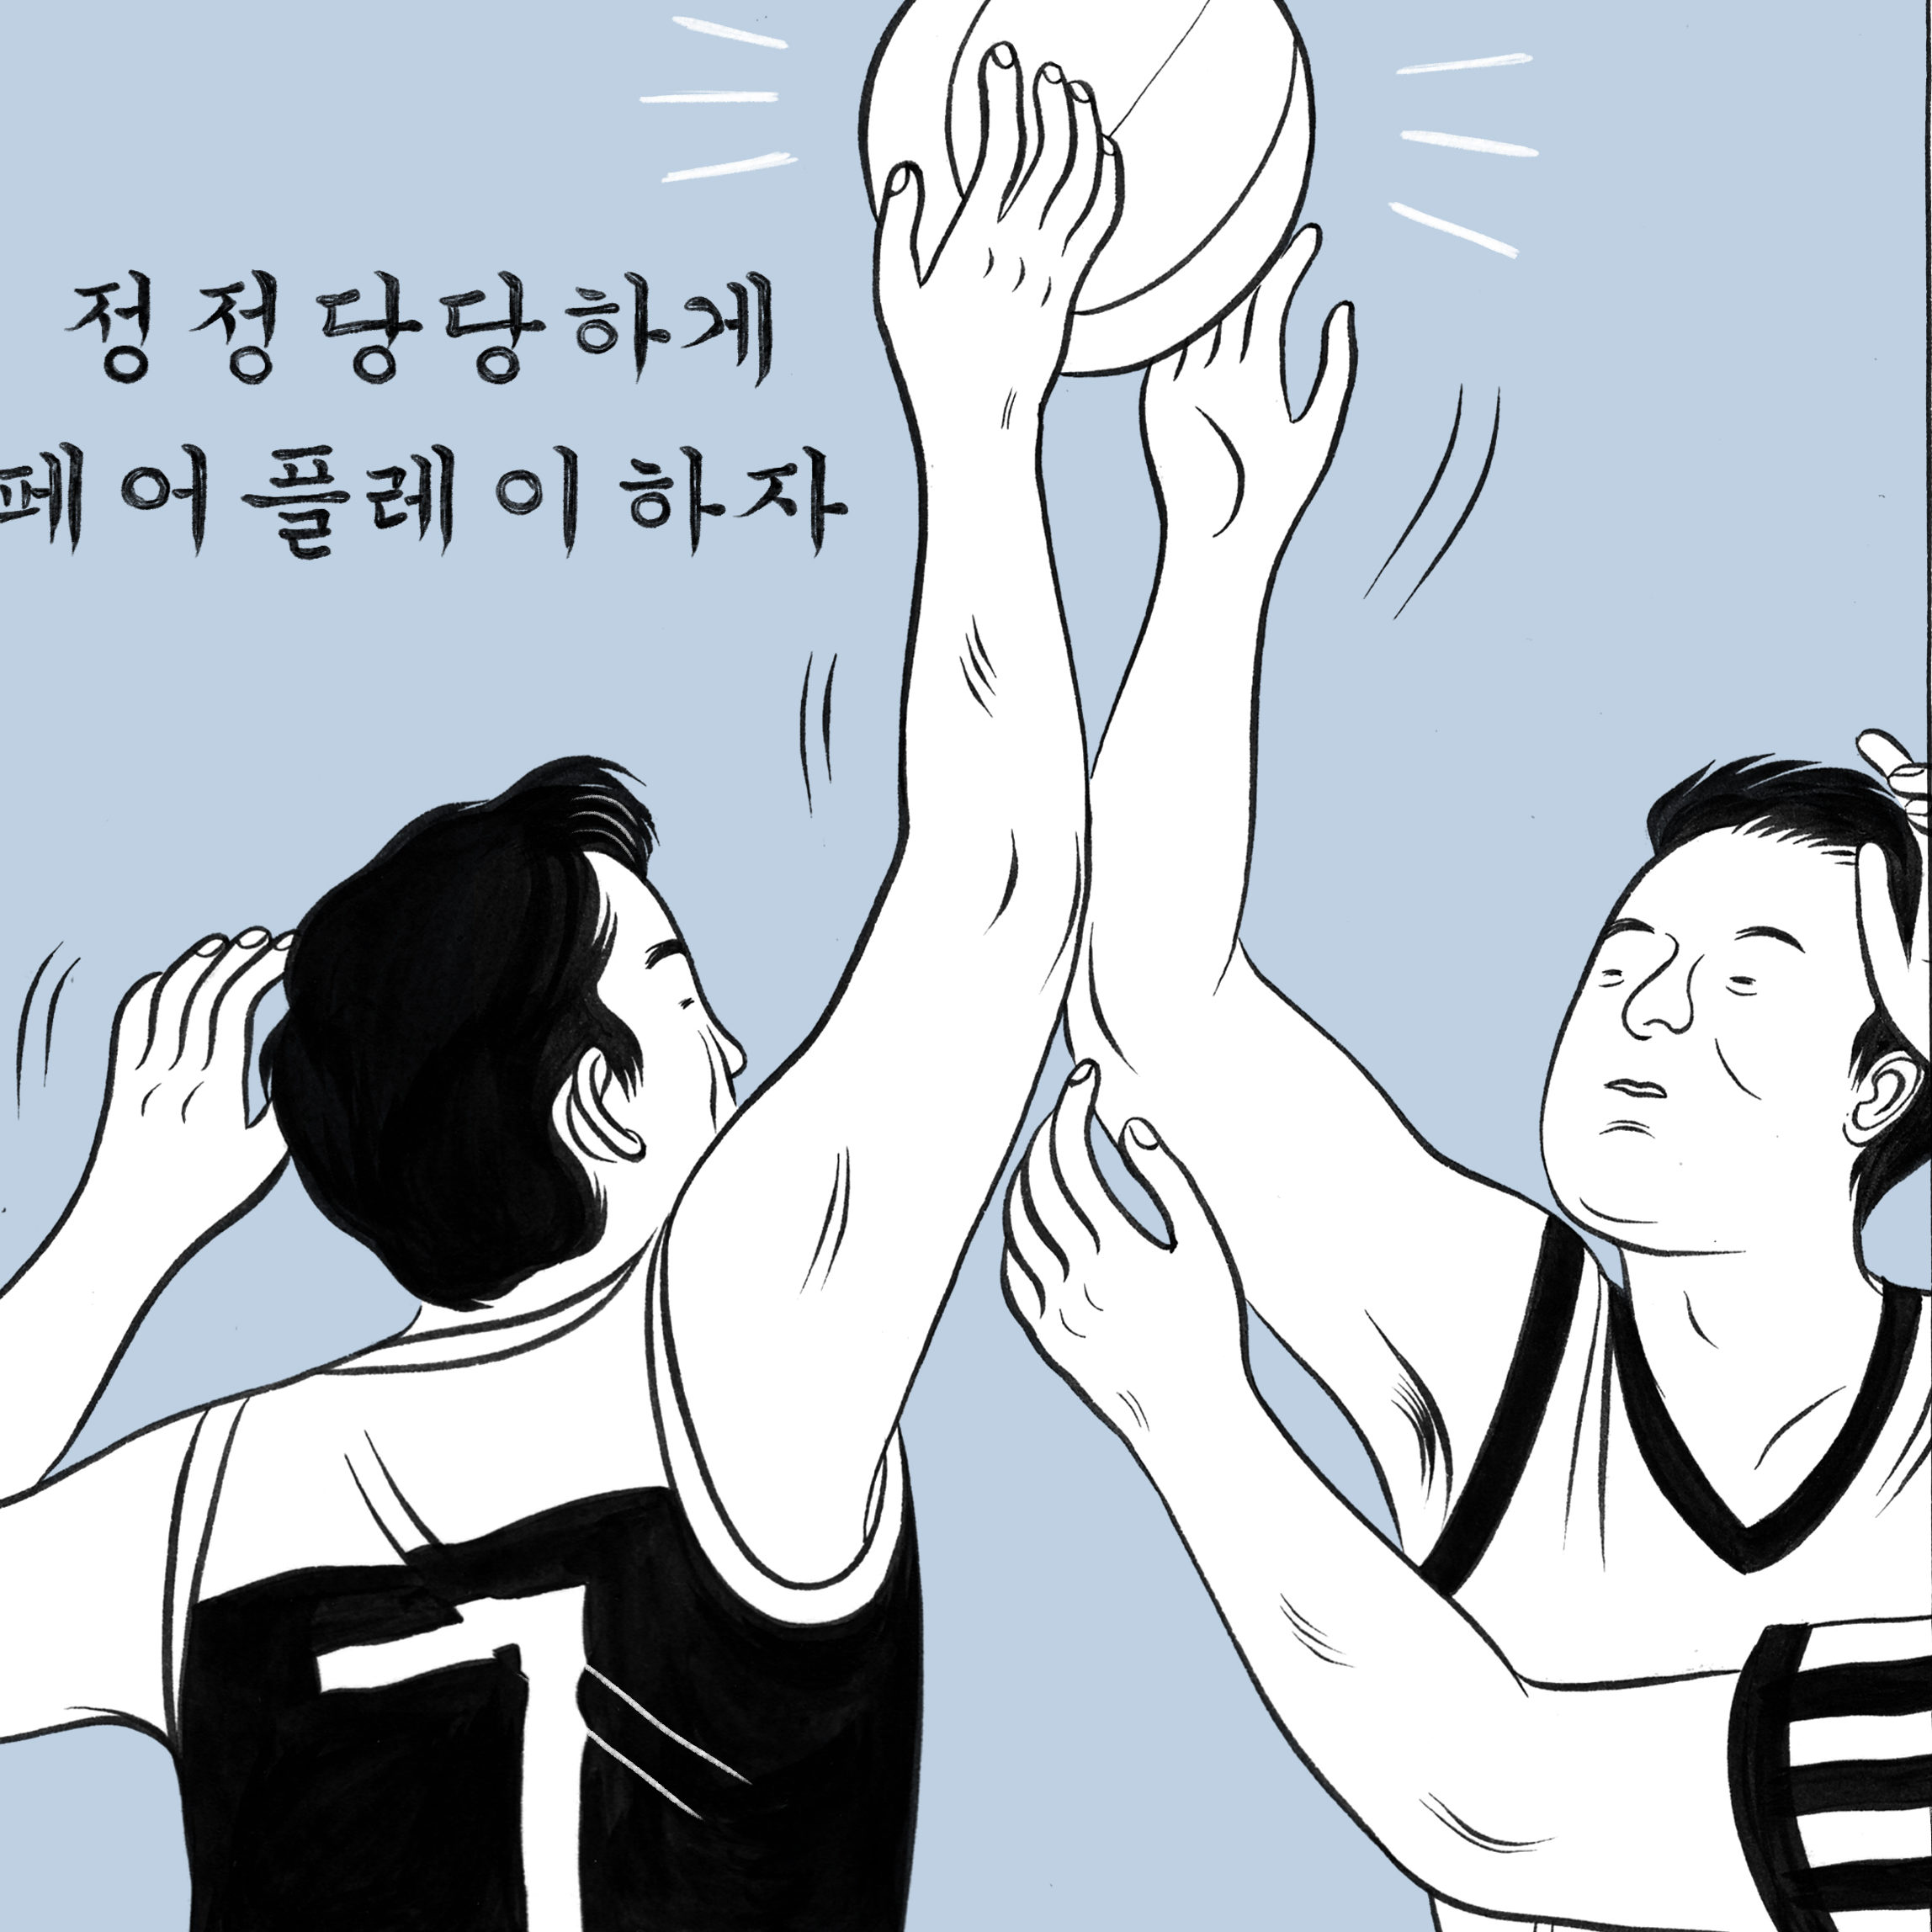 호빈이 다른 농구 선수와 동시에 농구공을 향해 손을 뻗는 만화 스타일의 삽화.